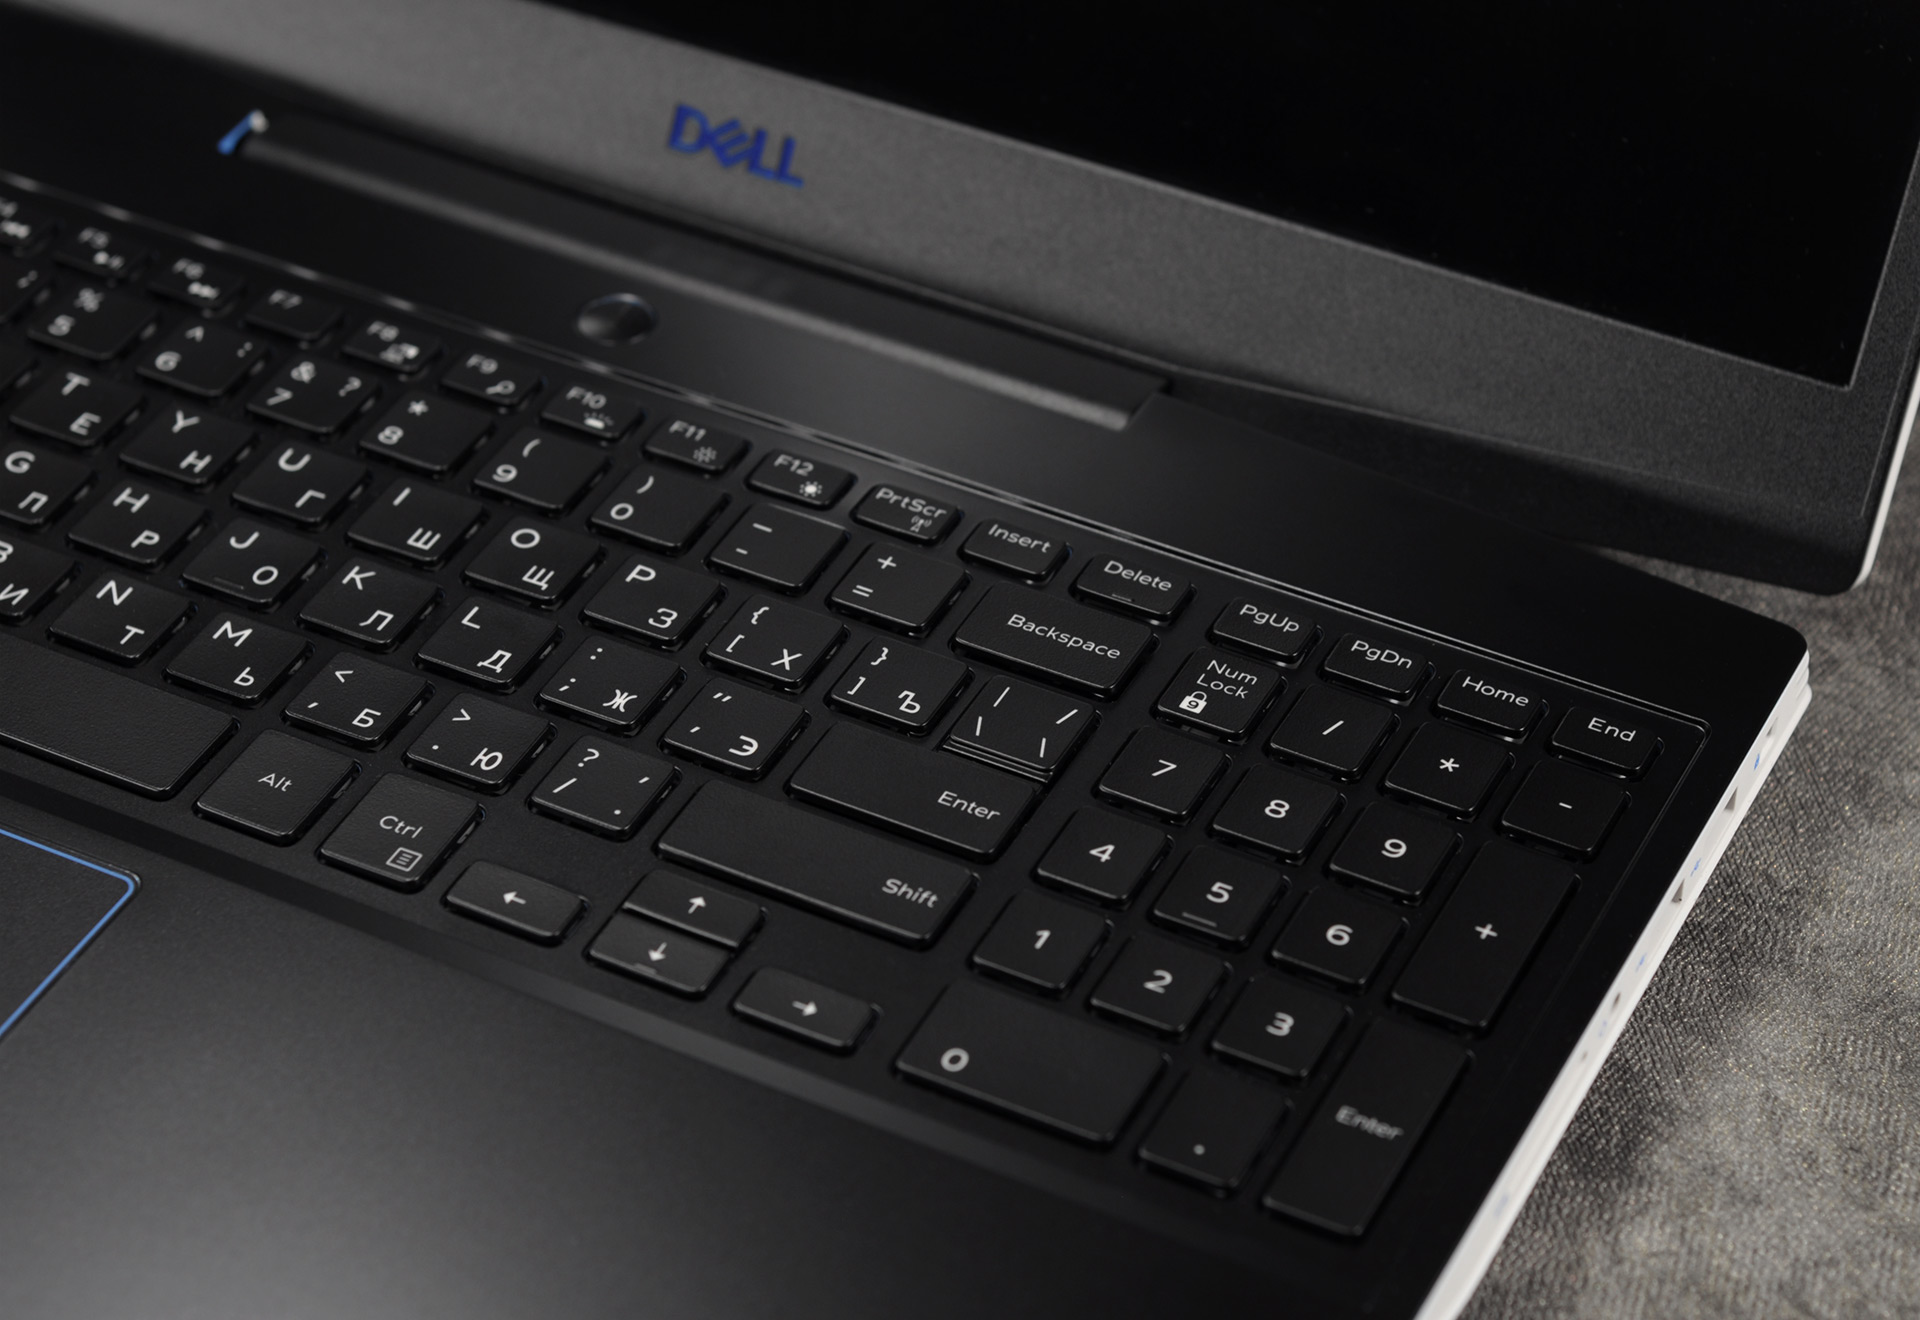 Обзор ноутбука DELL G3 3500 — универсал для работы и игр